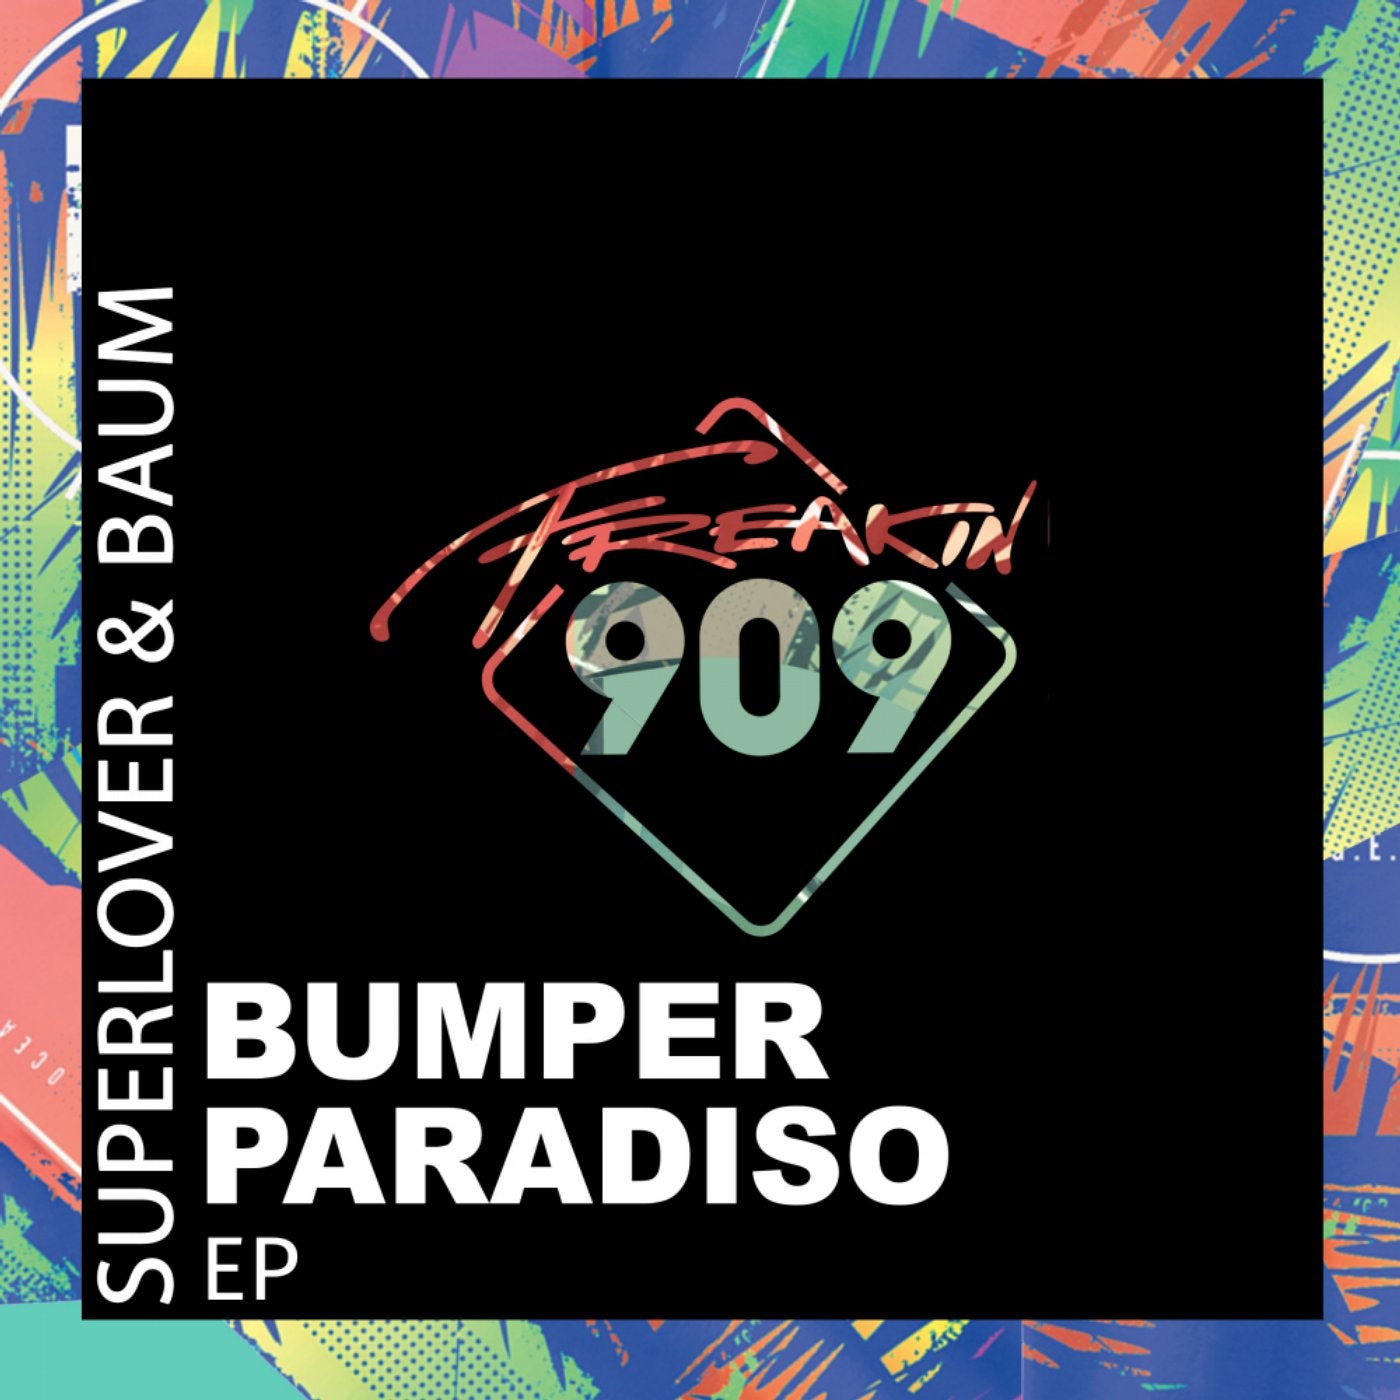 Bumper Paradiso EP